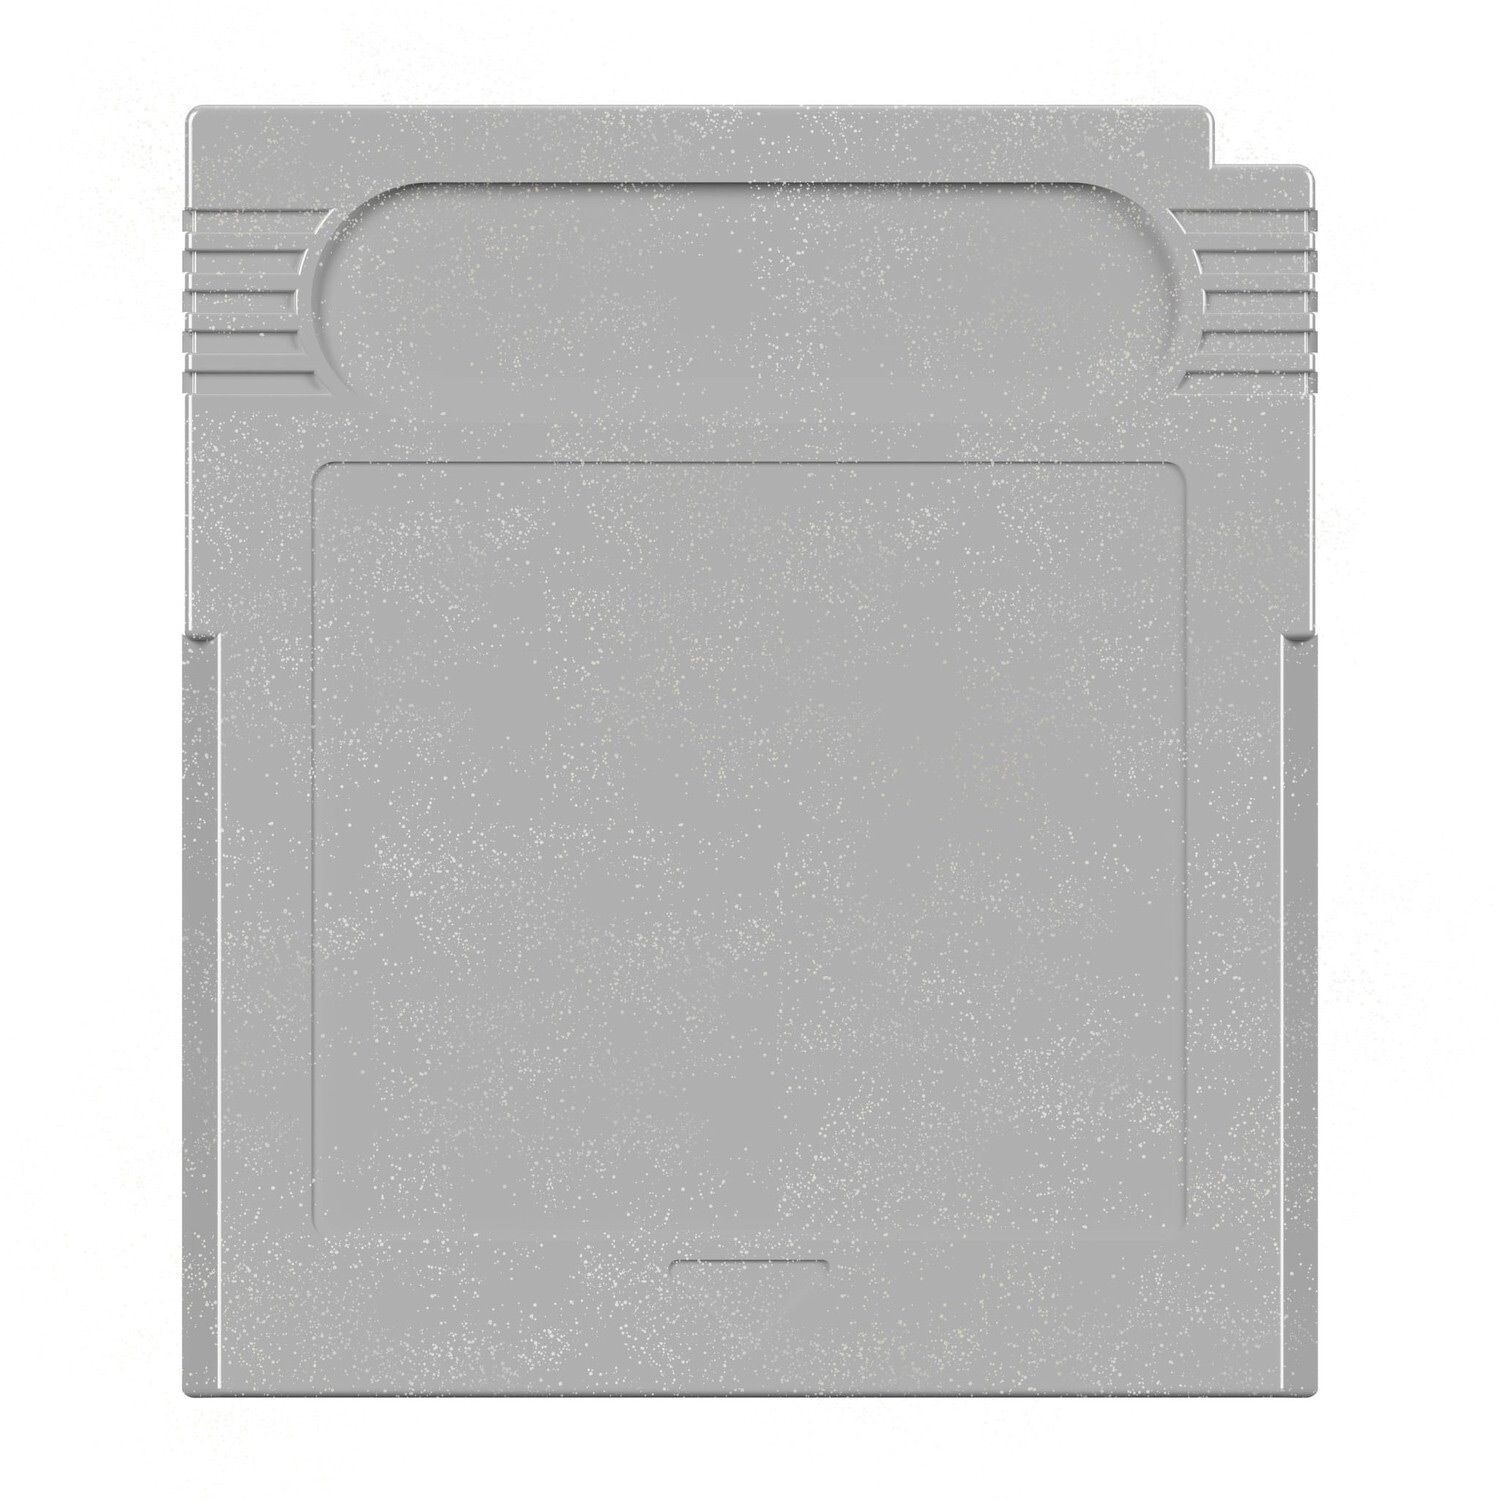 Game Boy Module Shell (Silver)